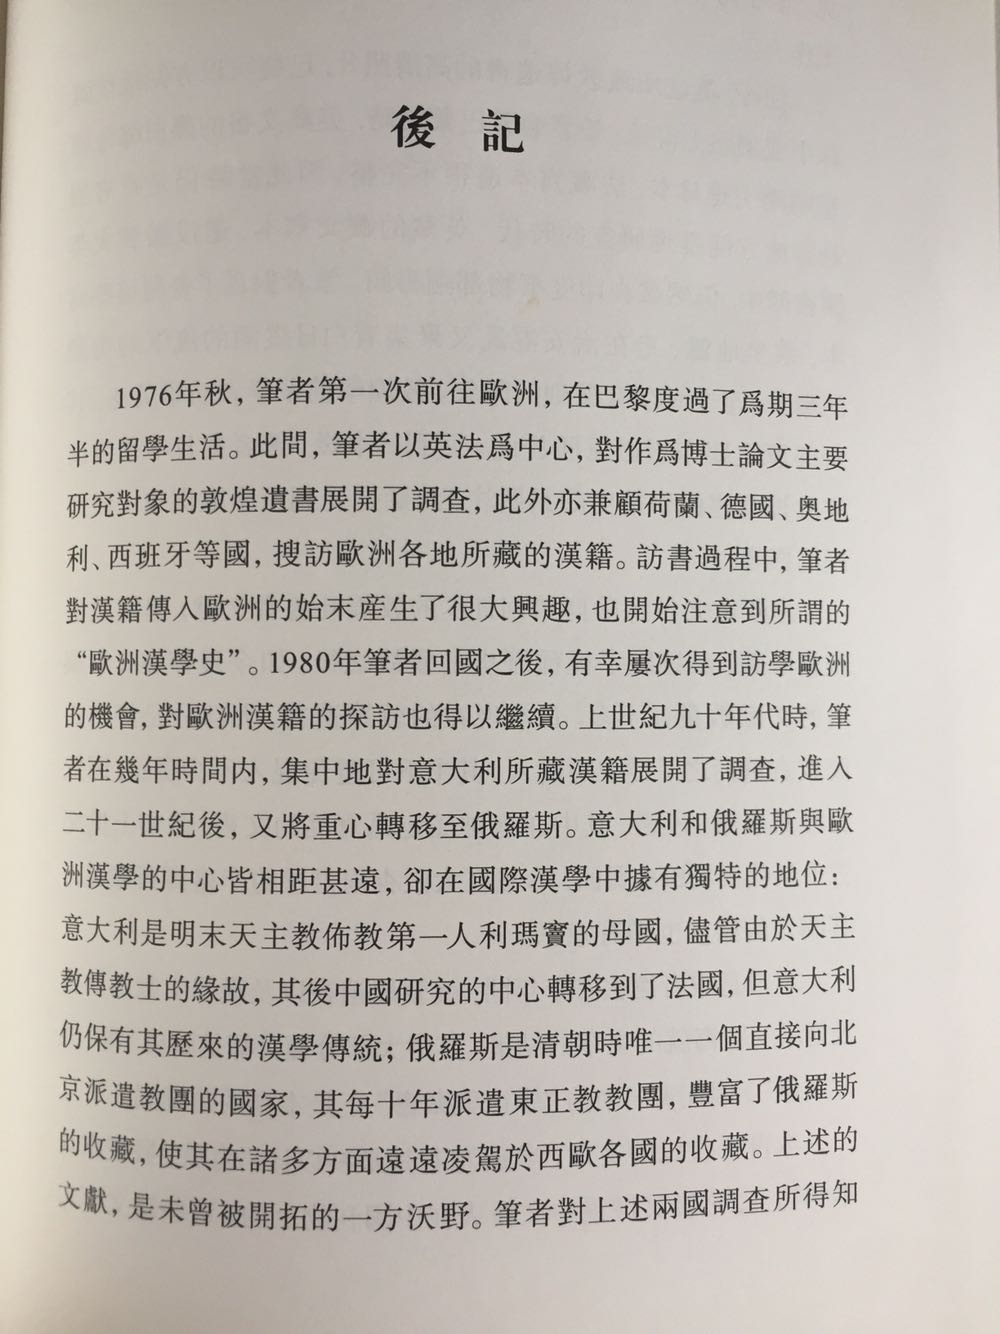 高田先生来中国工作后出的第一本书，从敦煌写本到域外汉籍到海外汉学和汉学家。最近公众号上刚开始推，618立马收入。